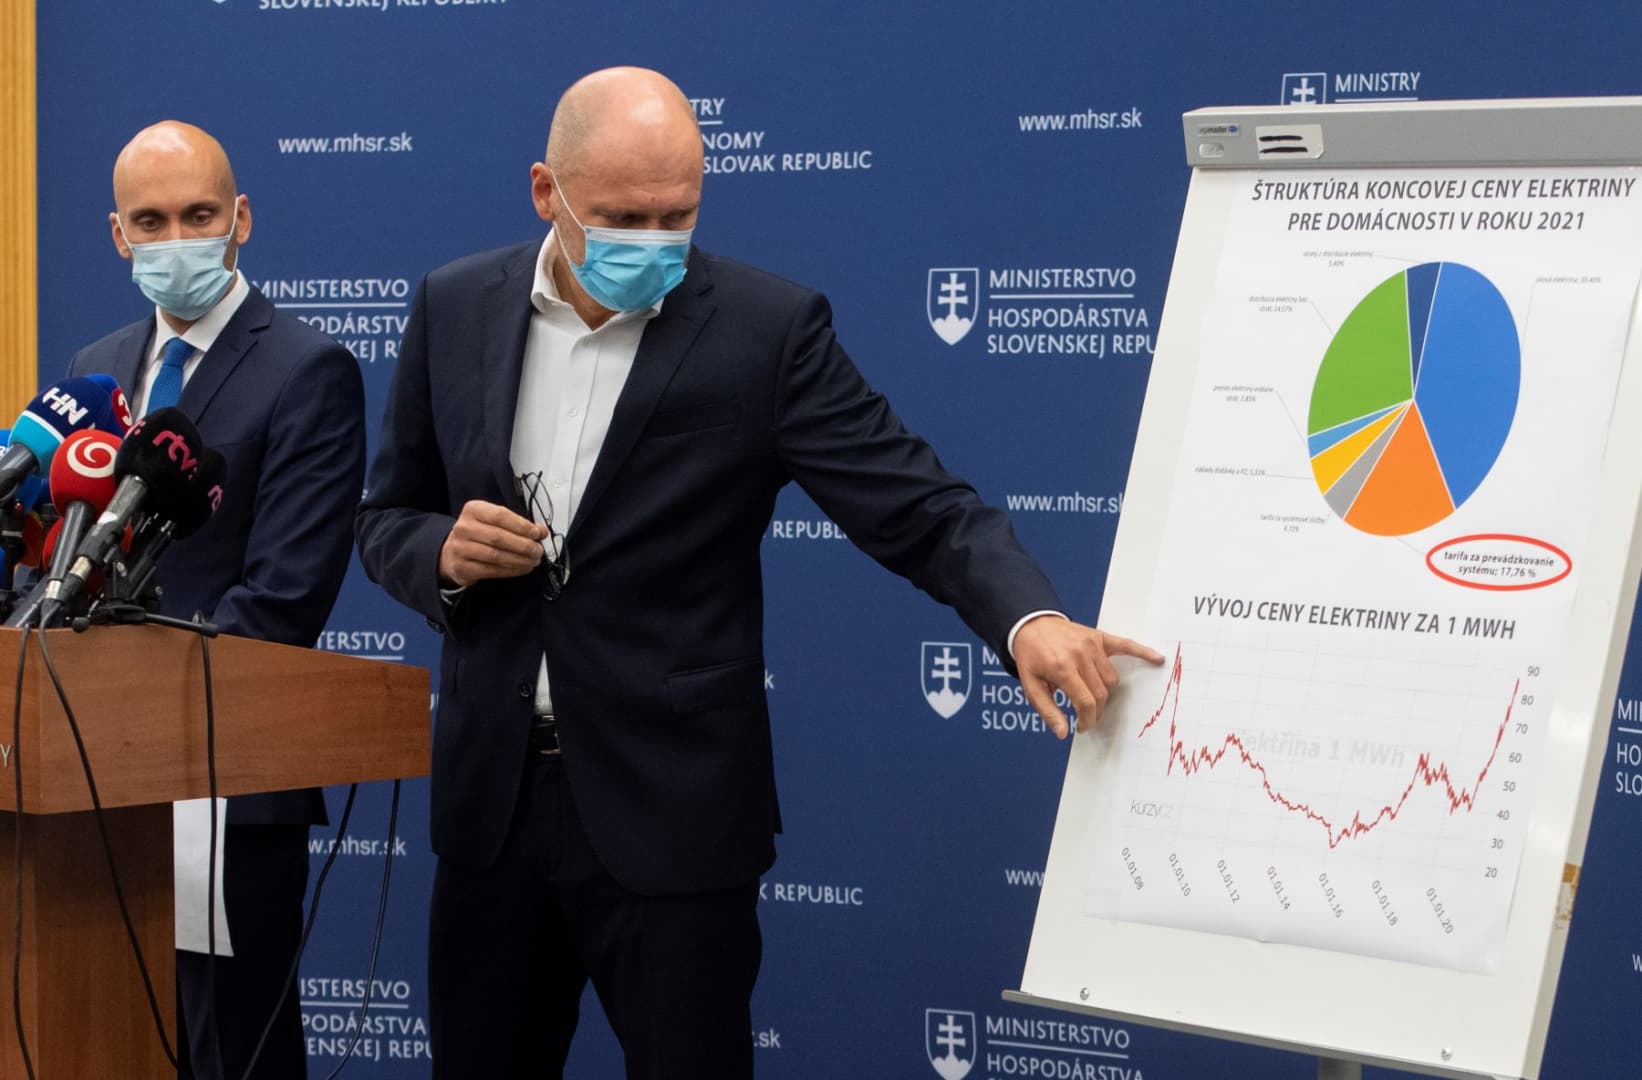 Matovič nem is akart senkit meggyőzni a vakcinalottóval, Sulík szerint meg nem kell aggódni a magas villanyszámla miatt; közben egyre nagyobb bajba kerül a belügyminiszter